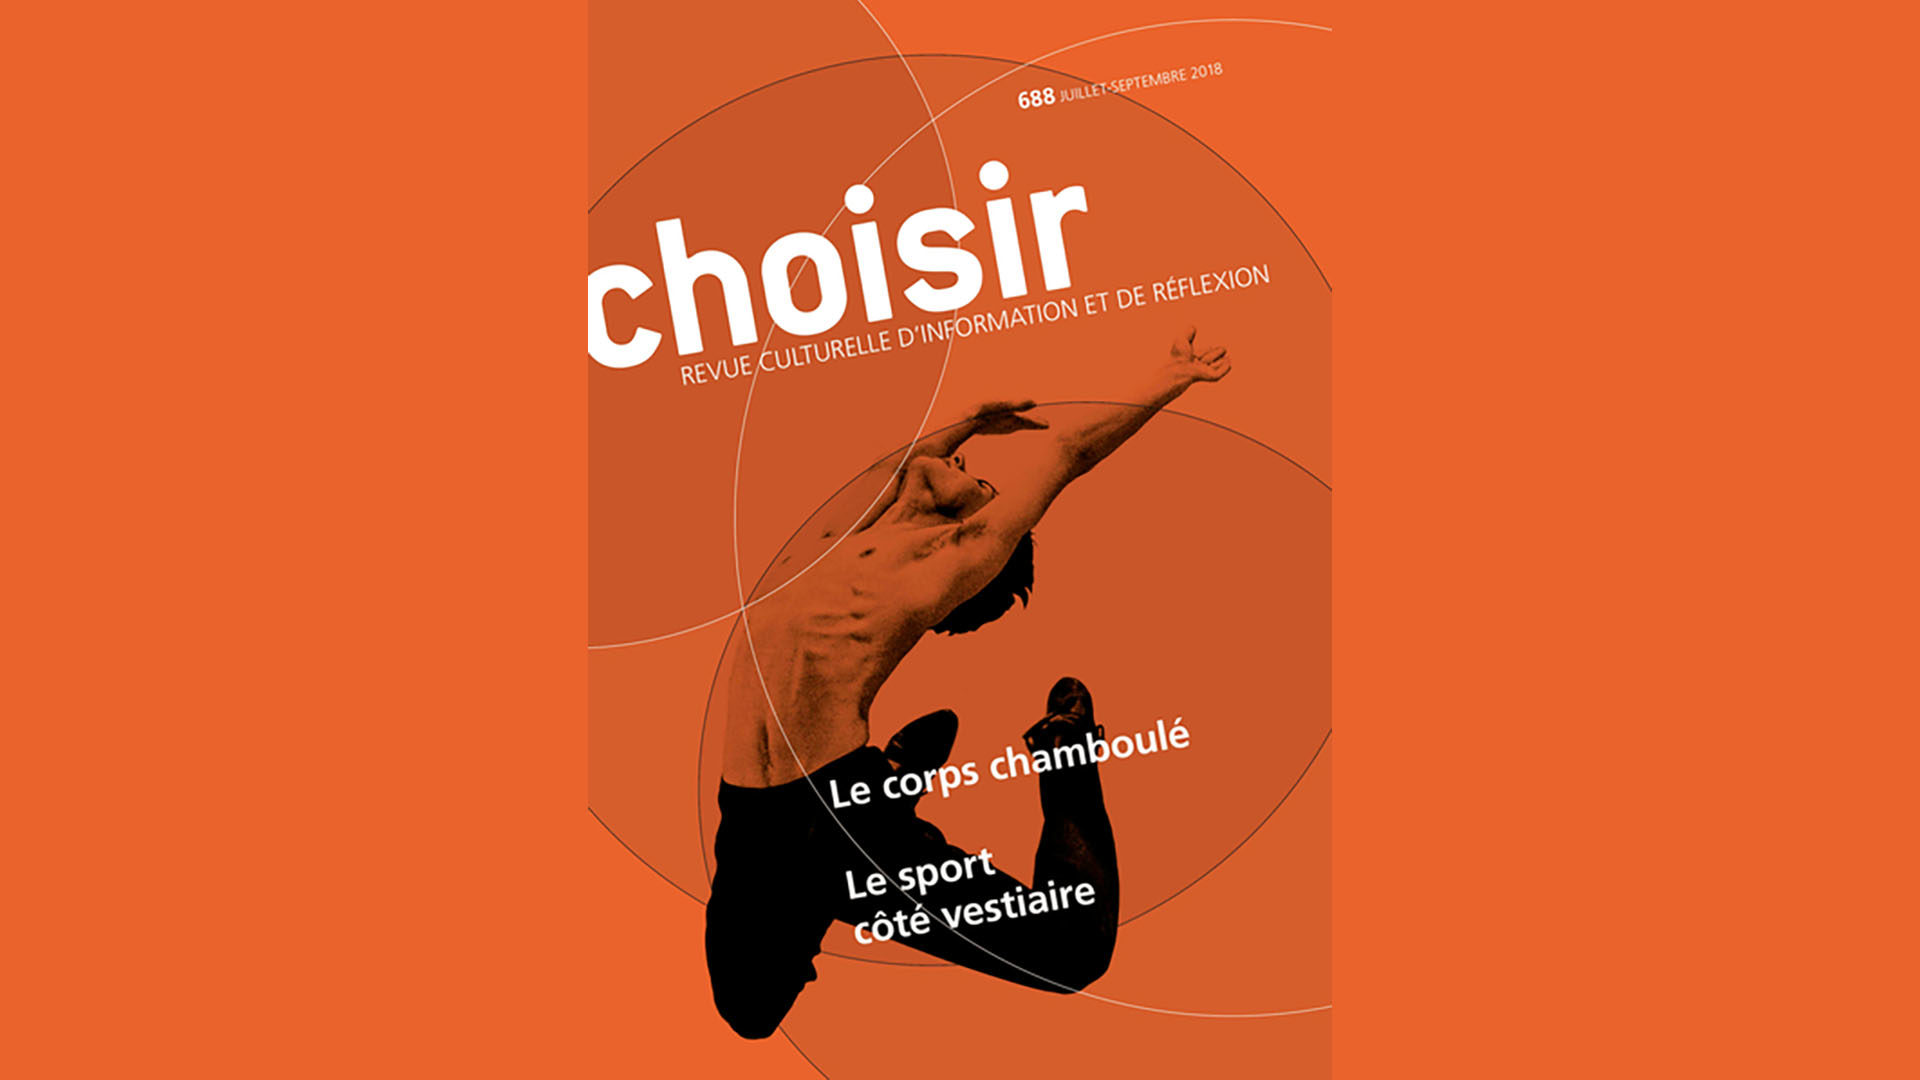 La revue 'Choisir' d'intéresse au sport. | © Choisir